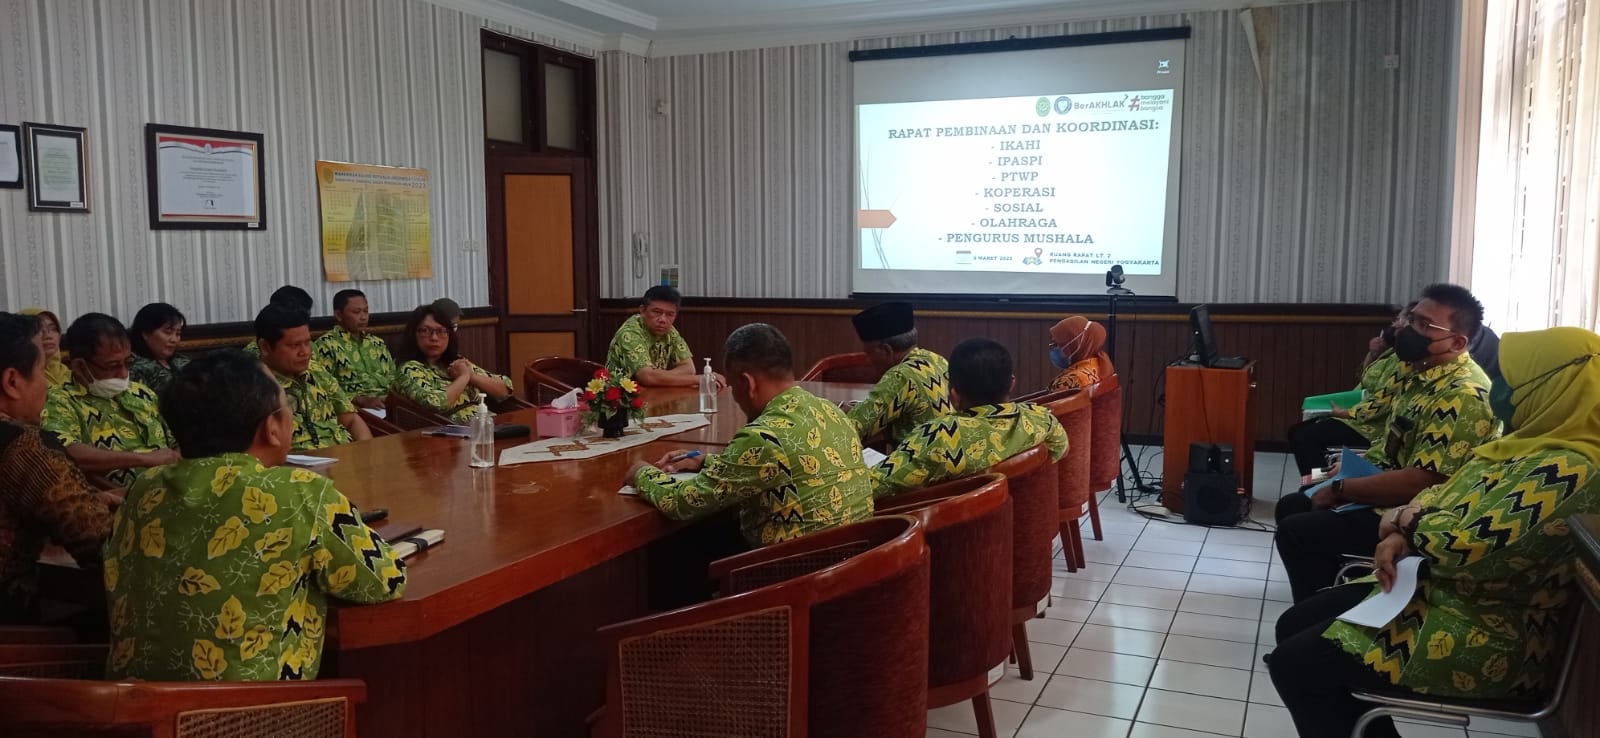 Rapat Pembinaan dan Koordinasi IKAHI, IPASPI, PTWP, Koperasi, Sosial, Olahraga dan Pengurus Mushola Pengadilan Negeri Yogyakarta